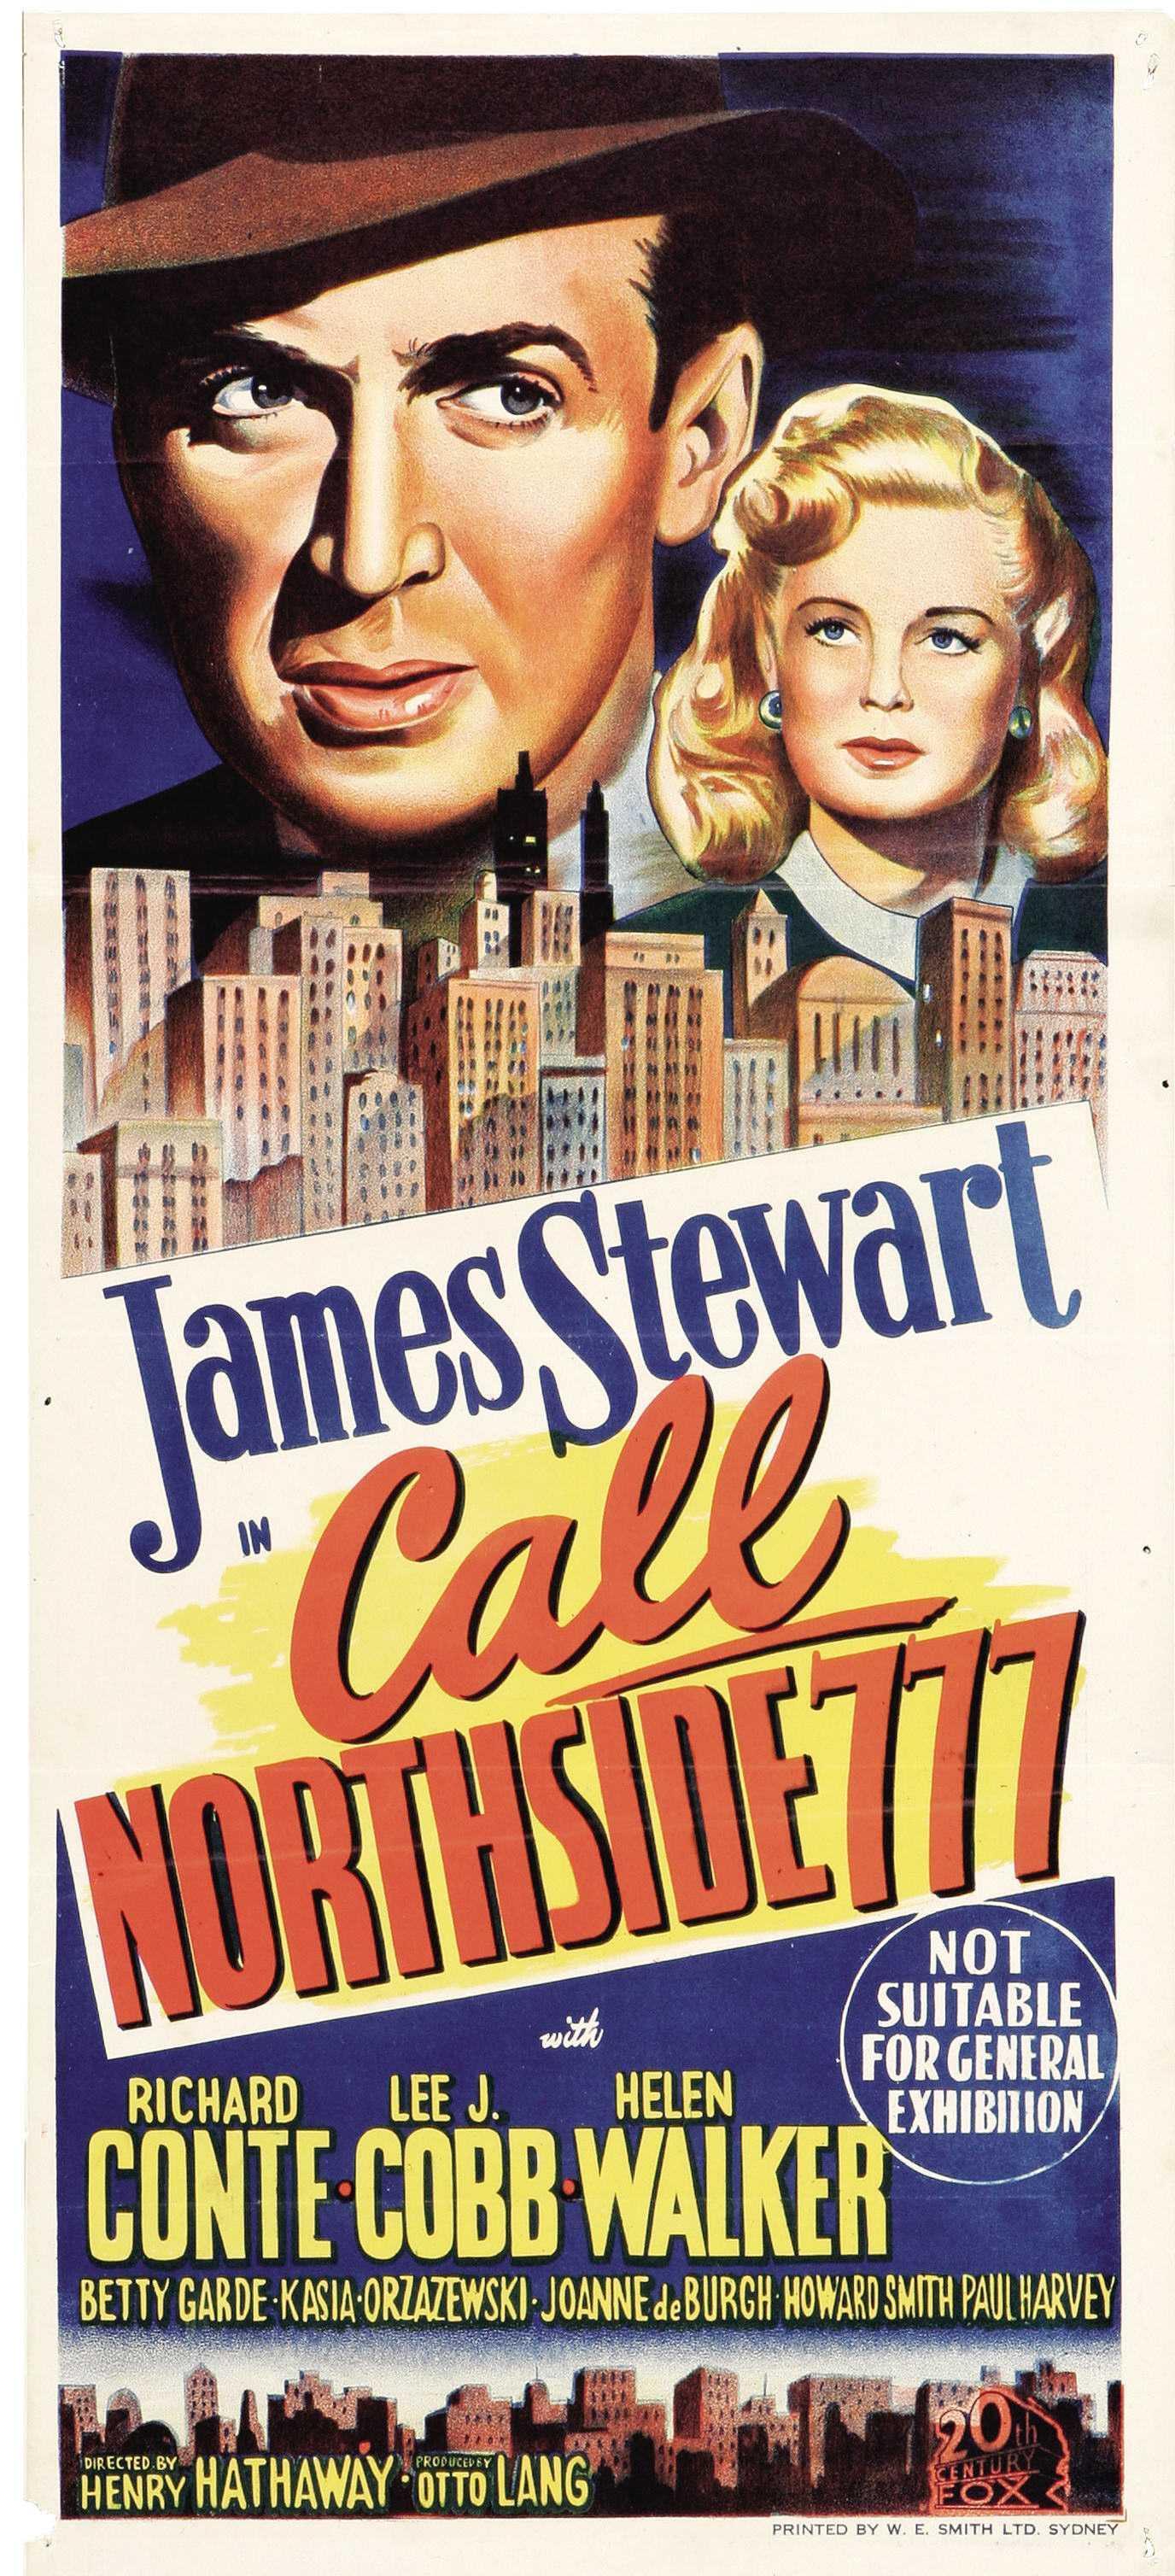 Постер фильма Звонить Нортсайд 777 | Call Northside 777